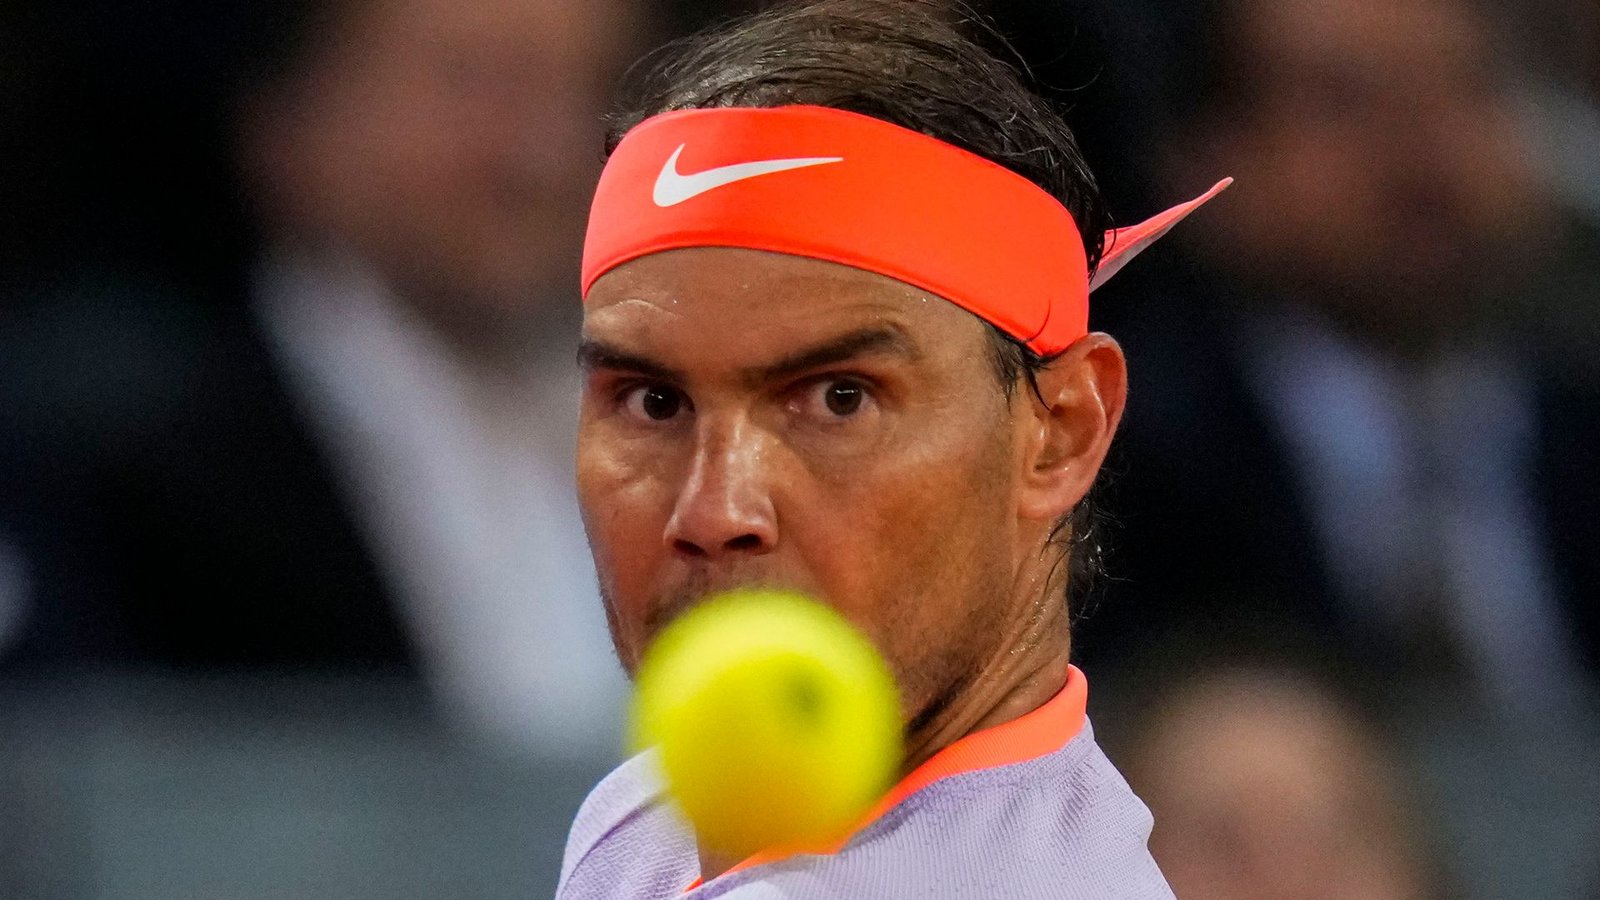 Rafael Nadal ist beim Turnier in Madrid ausgeschieden.Foto: Manu Fernandez/AP/dpa